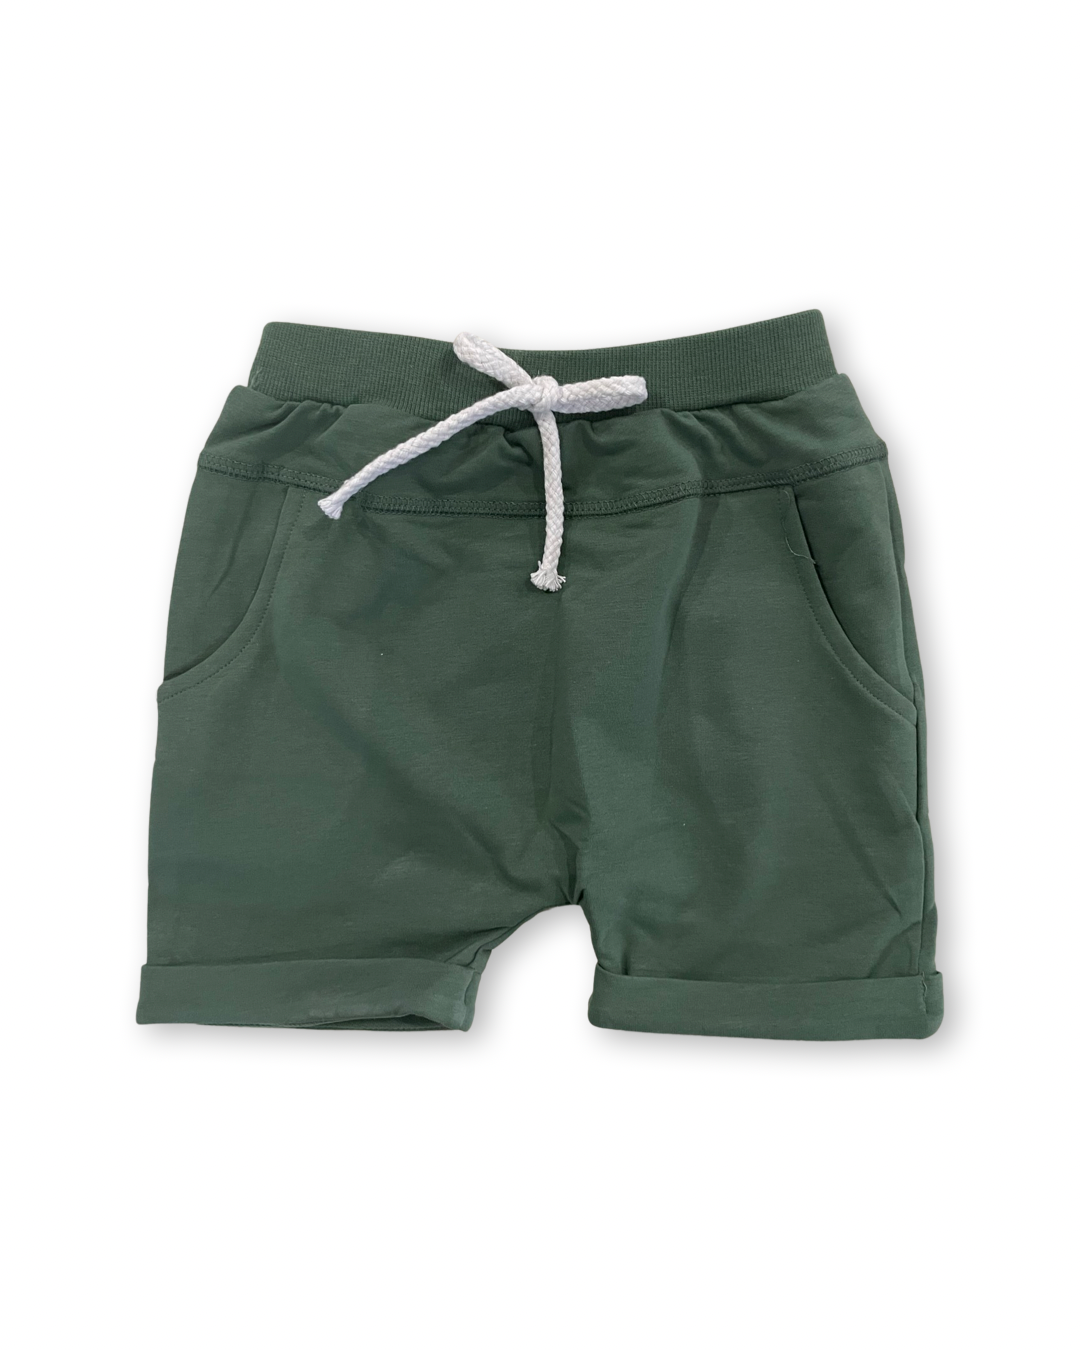 Gray and Green Shorts Set